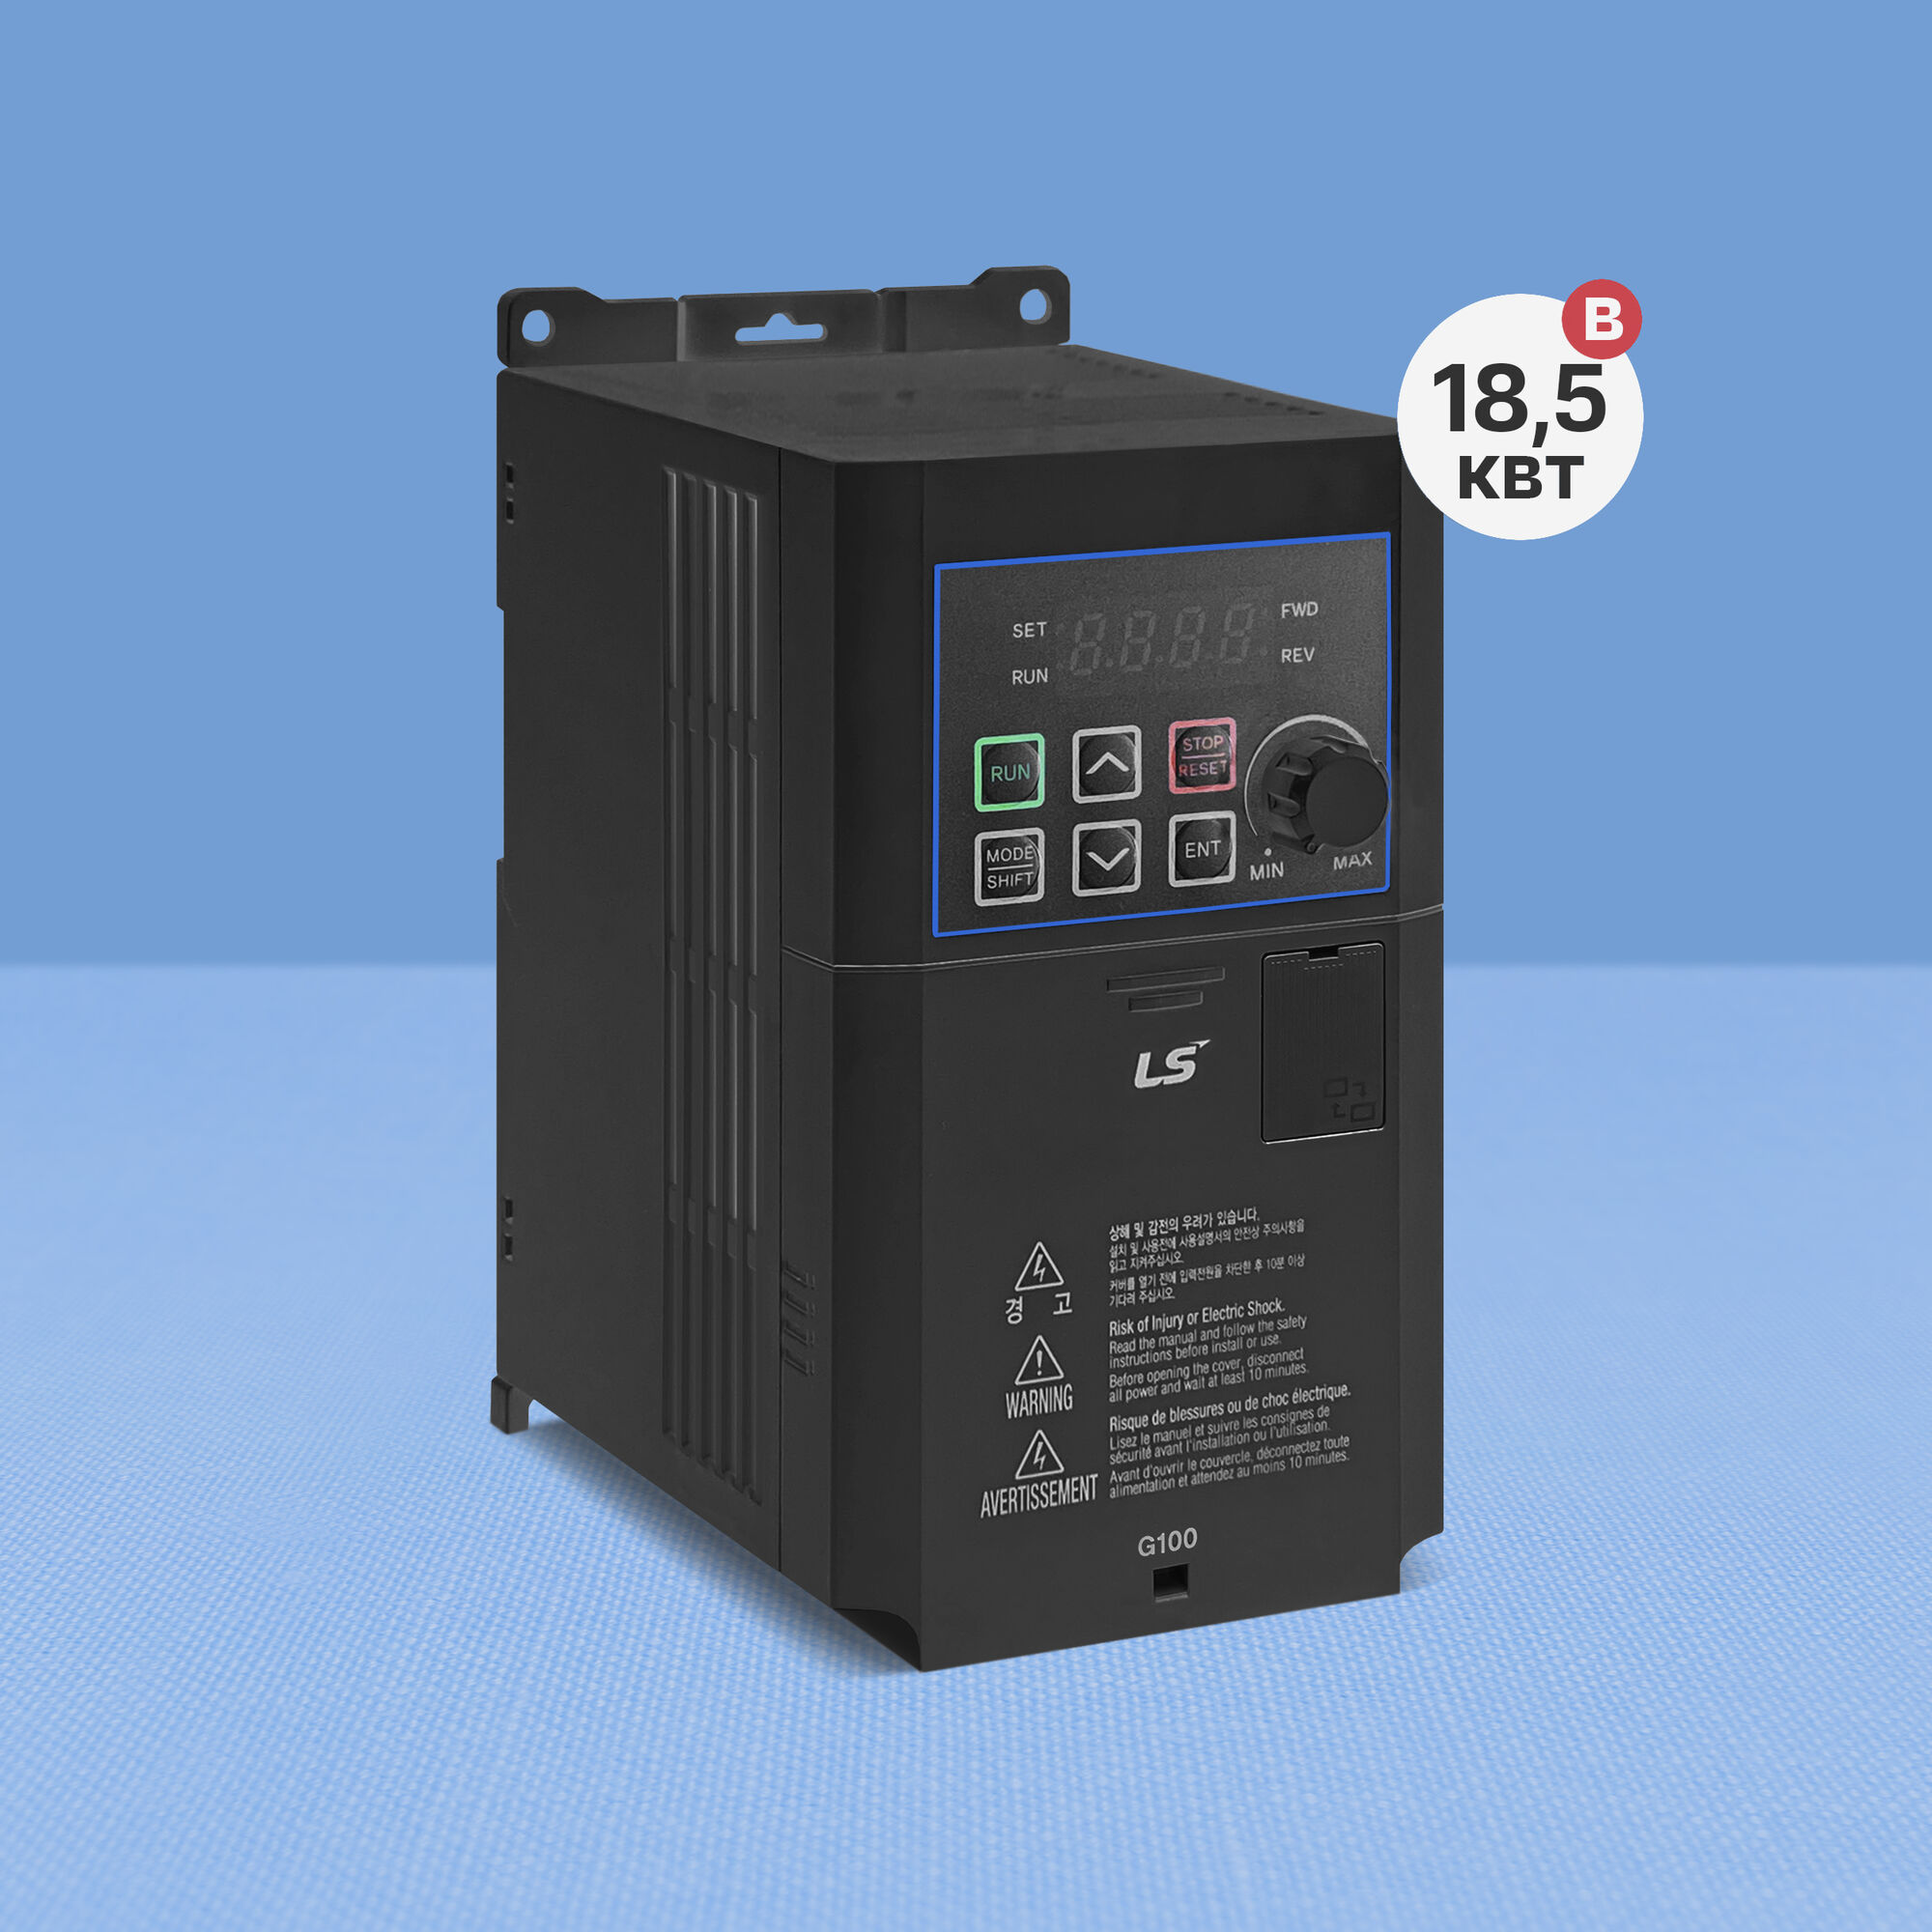 Частотный преобразователь LS G100 LV0150-4EOFN (18,5 кВт, 380 В, ЭМС)